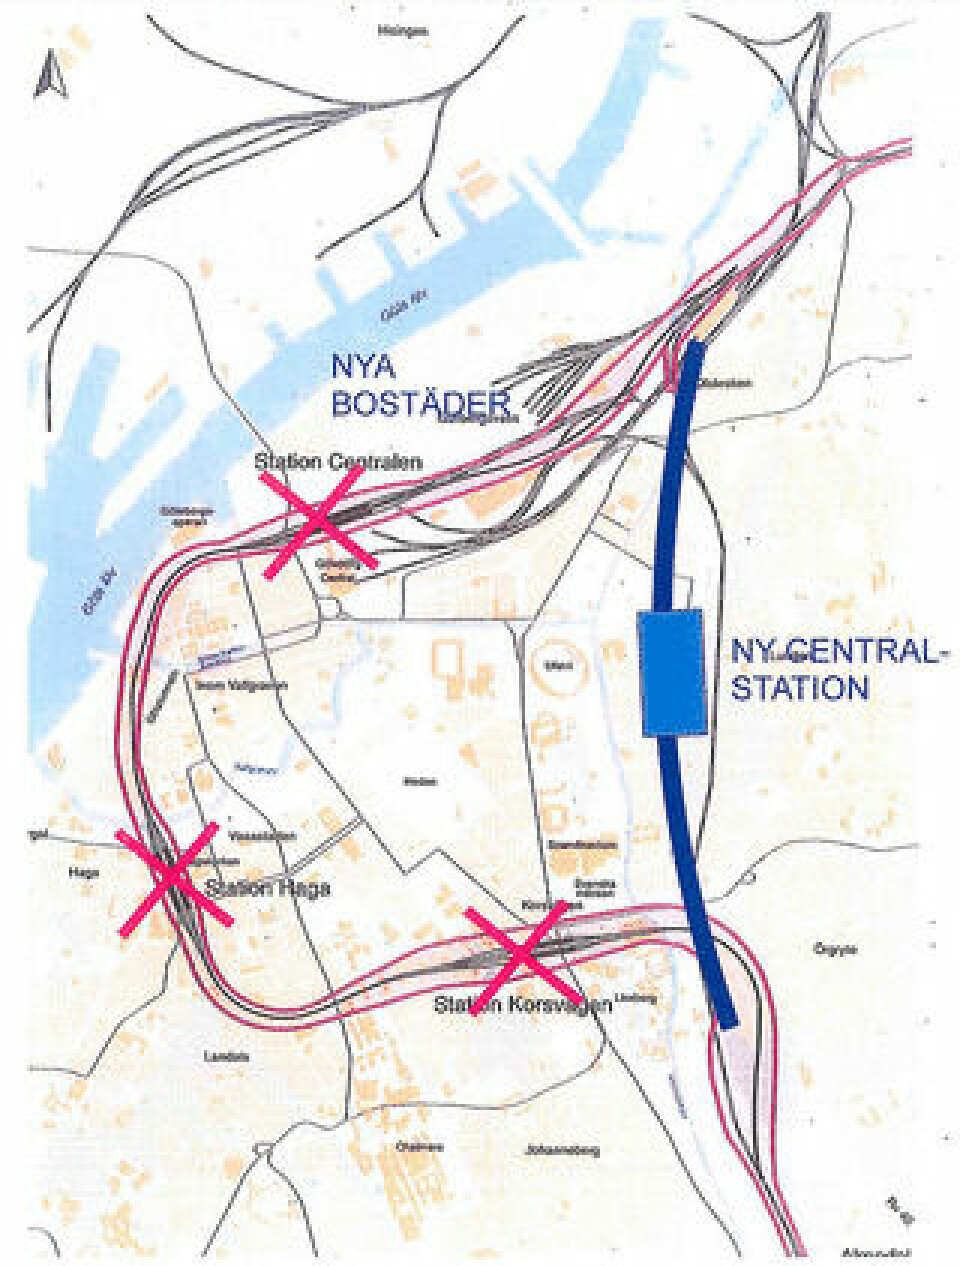 Förslaget Gårdalänken (i blått) innebär att centralstationen i Göteborg flyttas till Gårda och den nya järnvägen ges en rakare dragning än i Västlänken (i rosa).